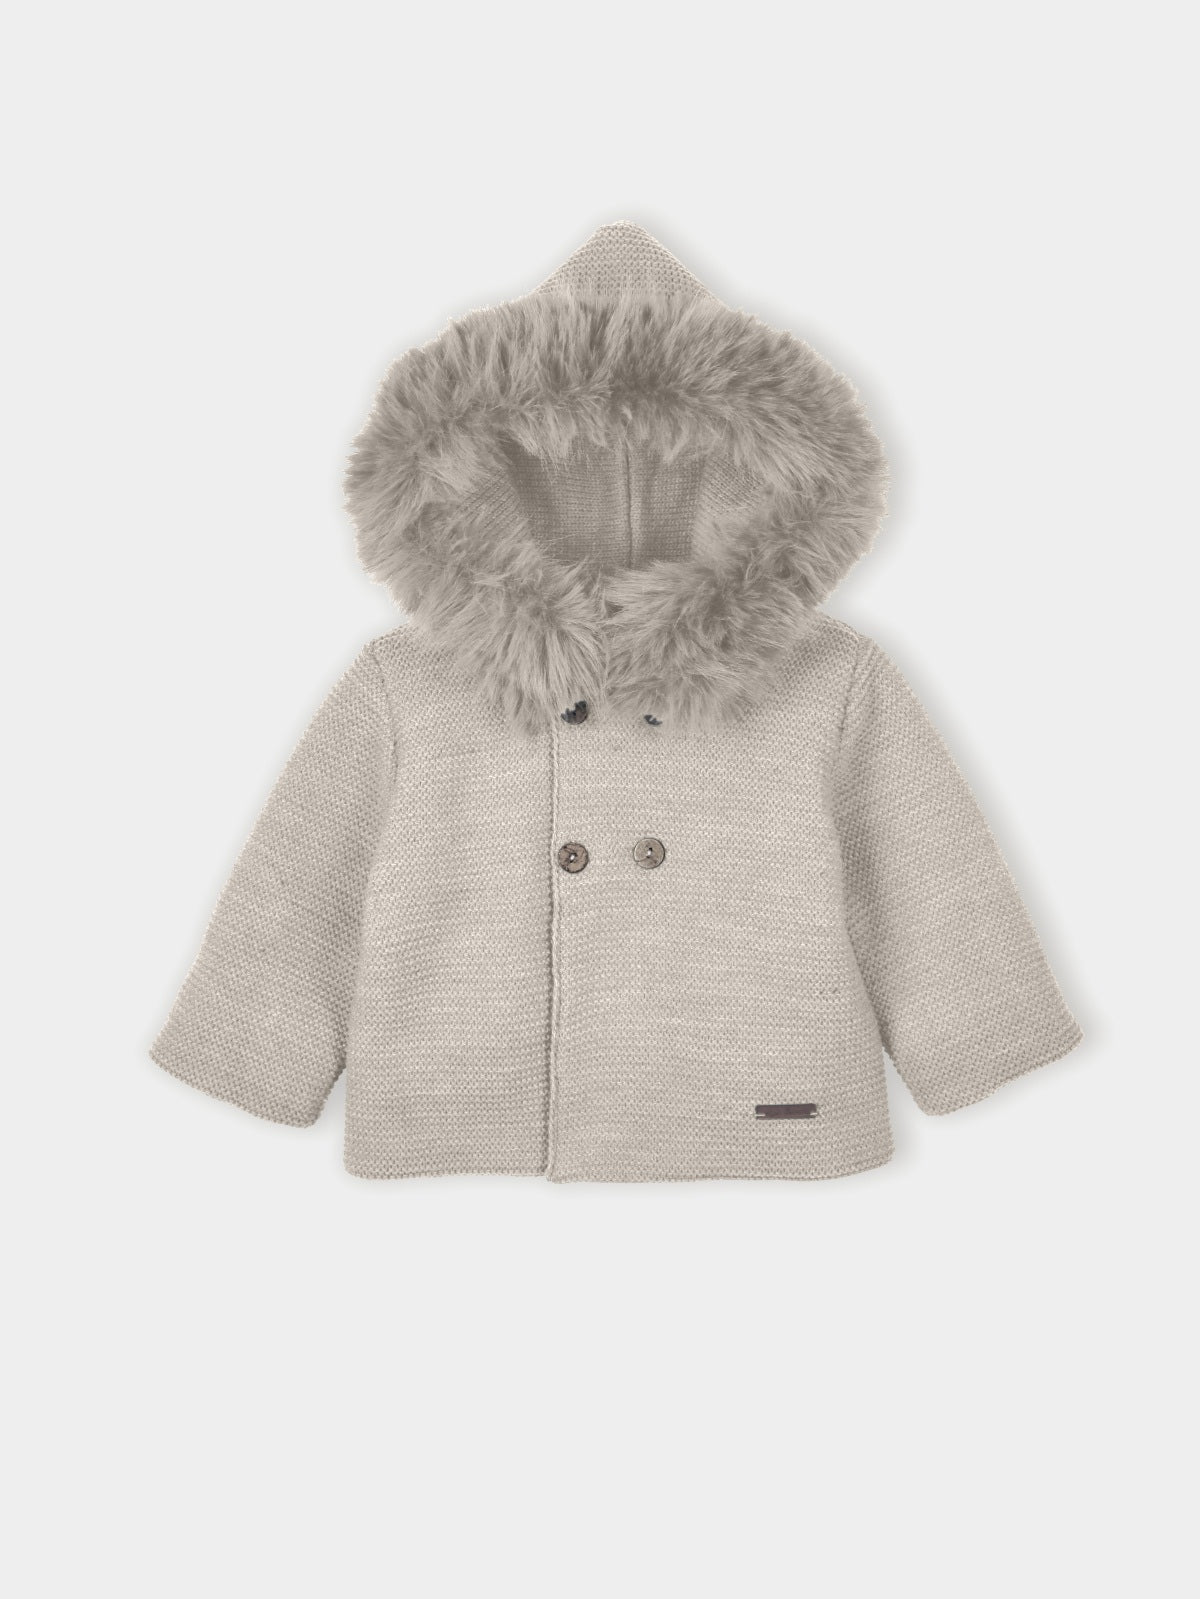 Mac Ilusion Unisex Baby Beige Knit Hooded Jacket